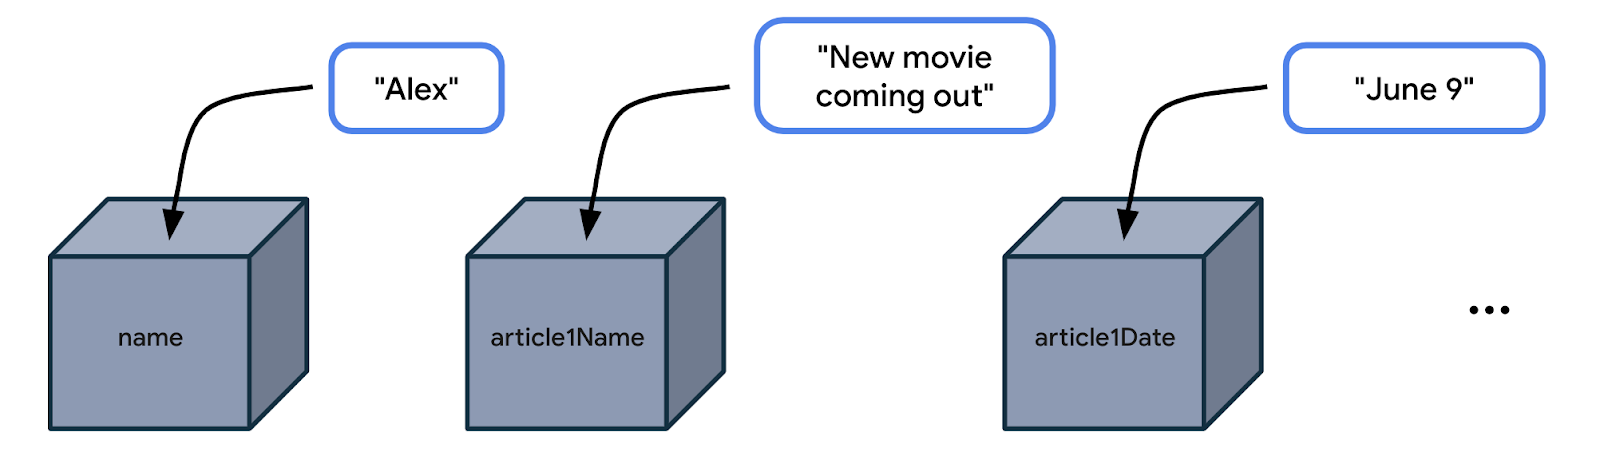 この図では、3 つの箱が横に並んで表示されています。最初の箱は name です。その横に「Alex」というラベルがあります。「Alex」から箱に向かって矢印が伸びており、これは値「Alex」が name という箱に格納されていることを意味しています。2 つ目の箱は article1Name です。その横に「New movie coming out（新作映画の公開）」というラベルがあります。この文字列から 2 つ目の箱に矢印が伸びています。これは、値「New movie coming out（新作映画の公開）」が article1Name という箱に格納されていることを意味しています。3 つ目の箱は article1Date です。その横に「June 9」というラベルがあります。「June 9」から 3 つ目の箱に矢印が伸びています。これは、値「June 9」が article1Date という箱に格納されていることを意味します。